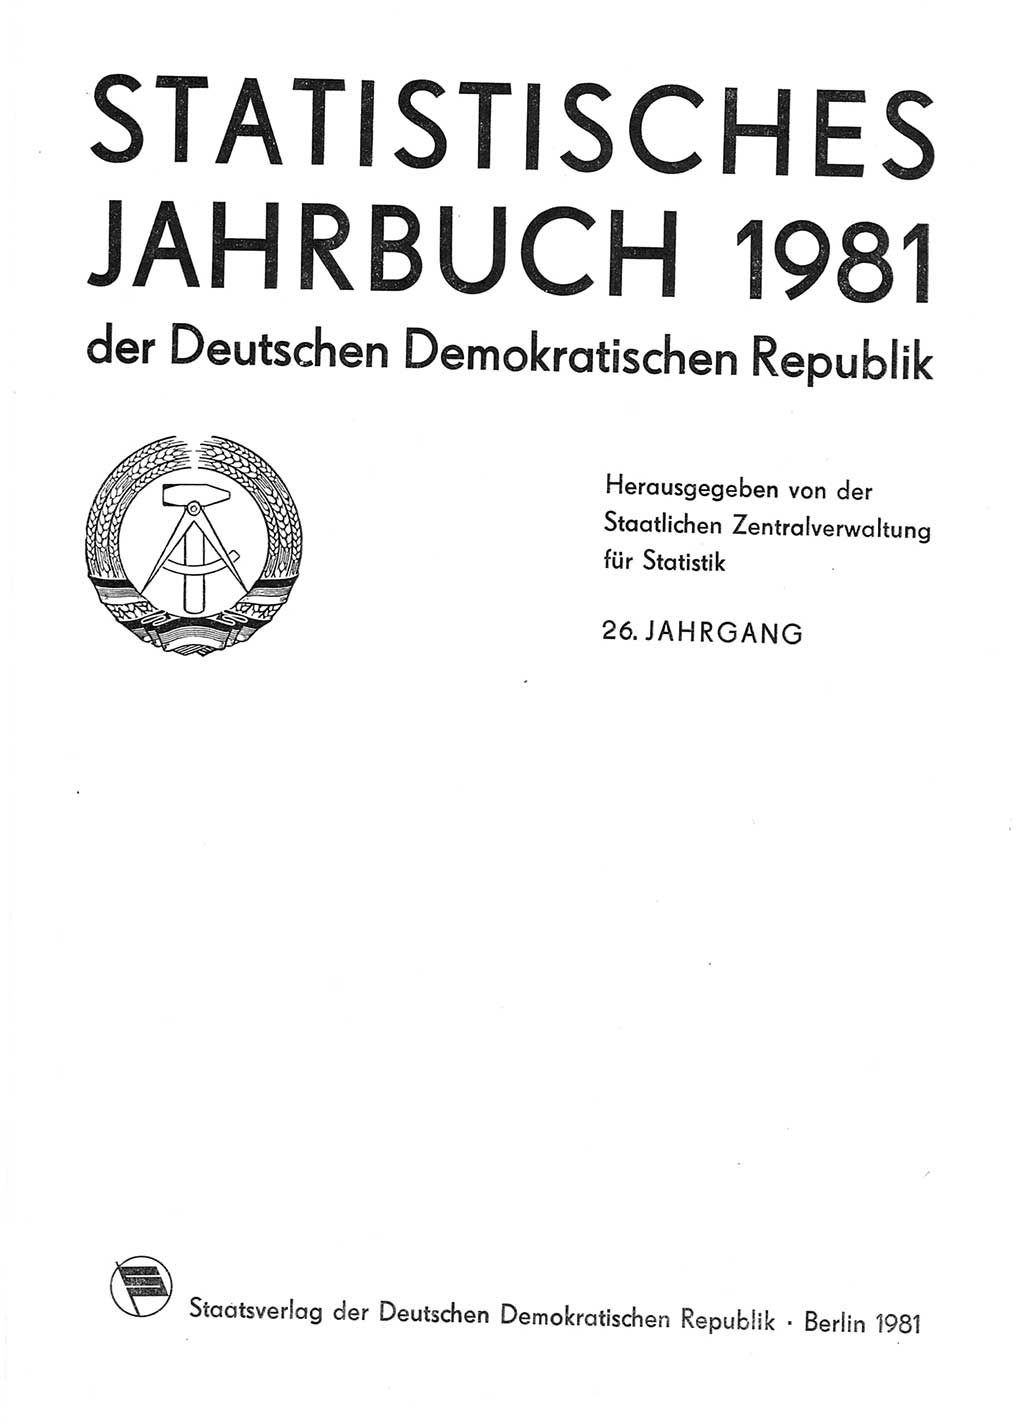 Statistisches Jahrbuch der Deutschen Demokratischen Republik (DDR) 1981, Seite 1 (Stat. Jb. DDR 1981, S. 1)